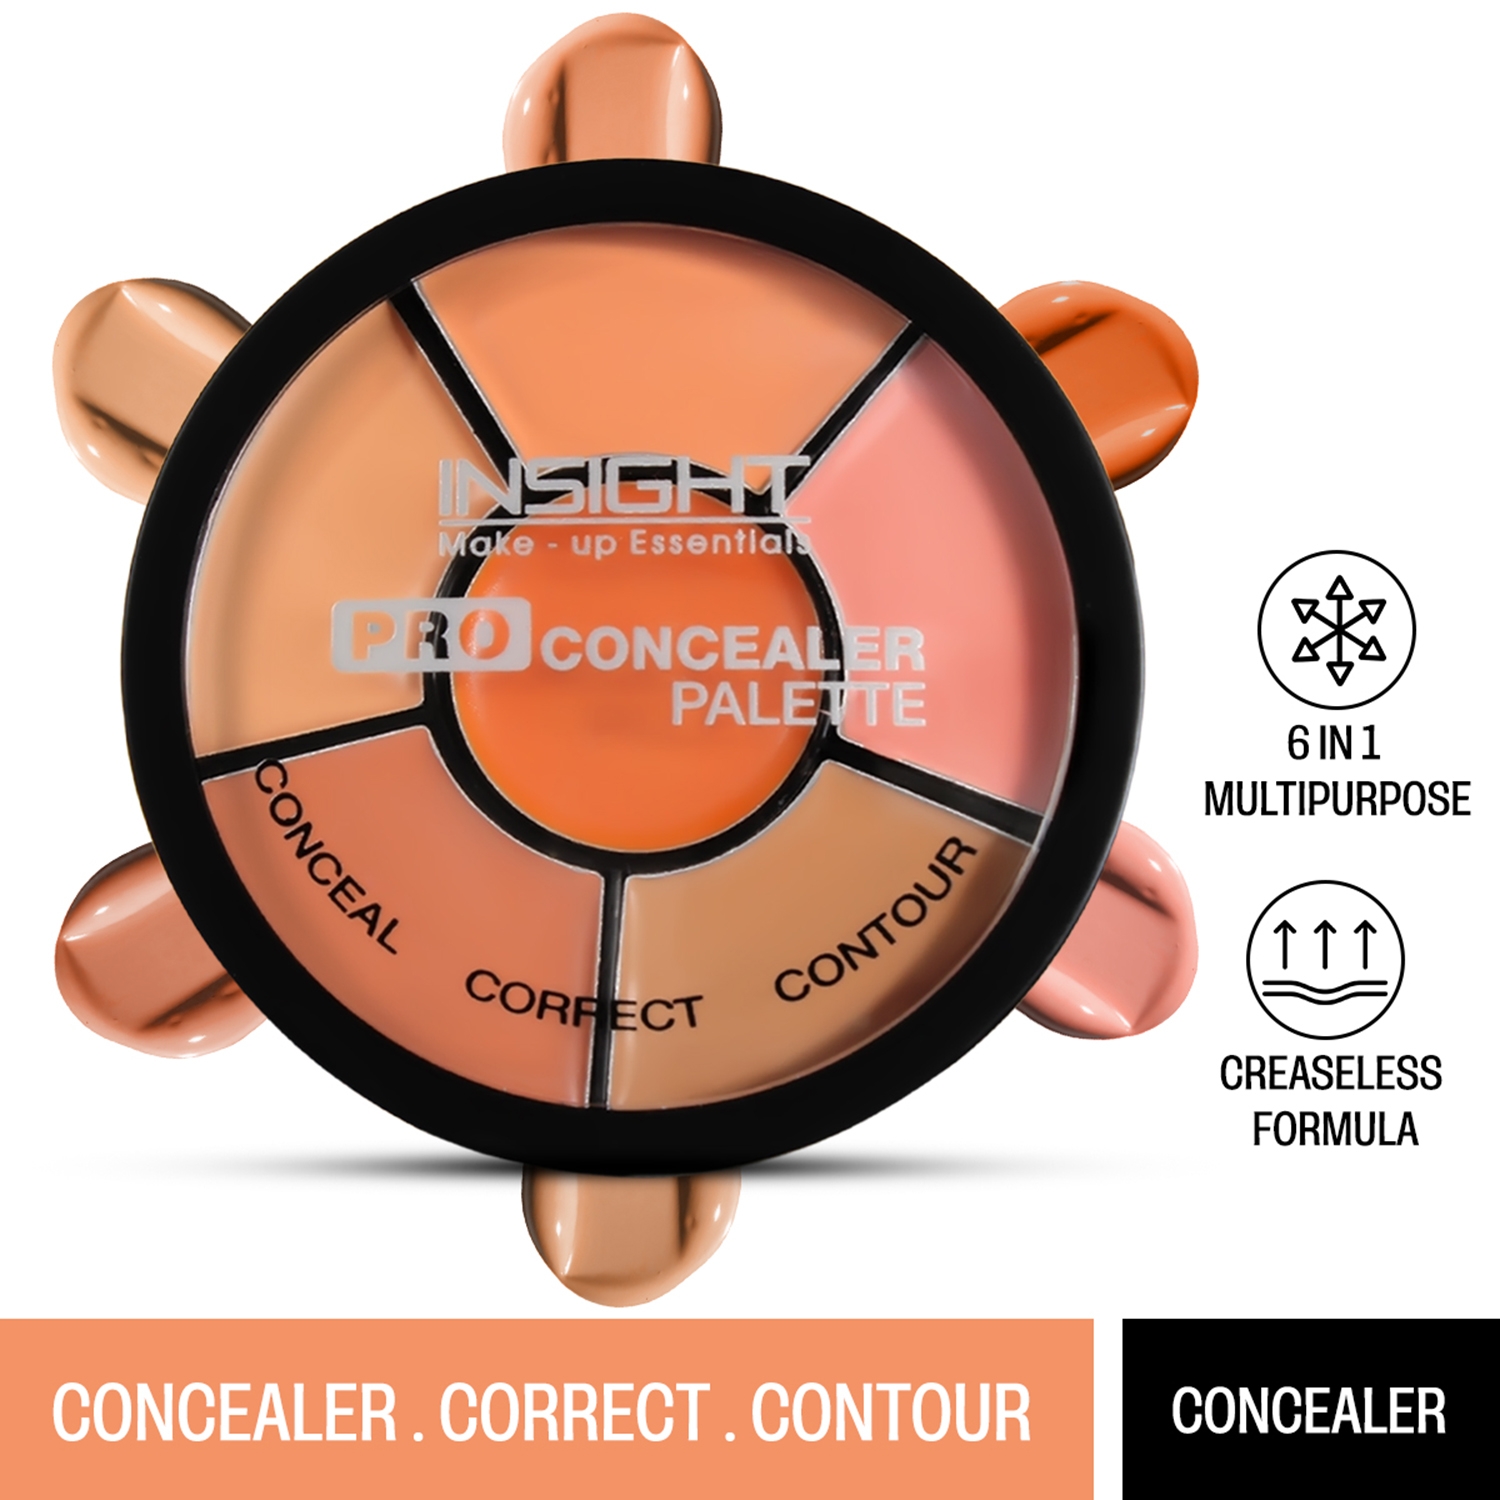 Insight Cosmetics Pro Concealer Palette - Concealer (15g)